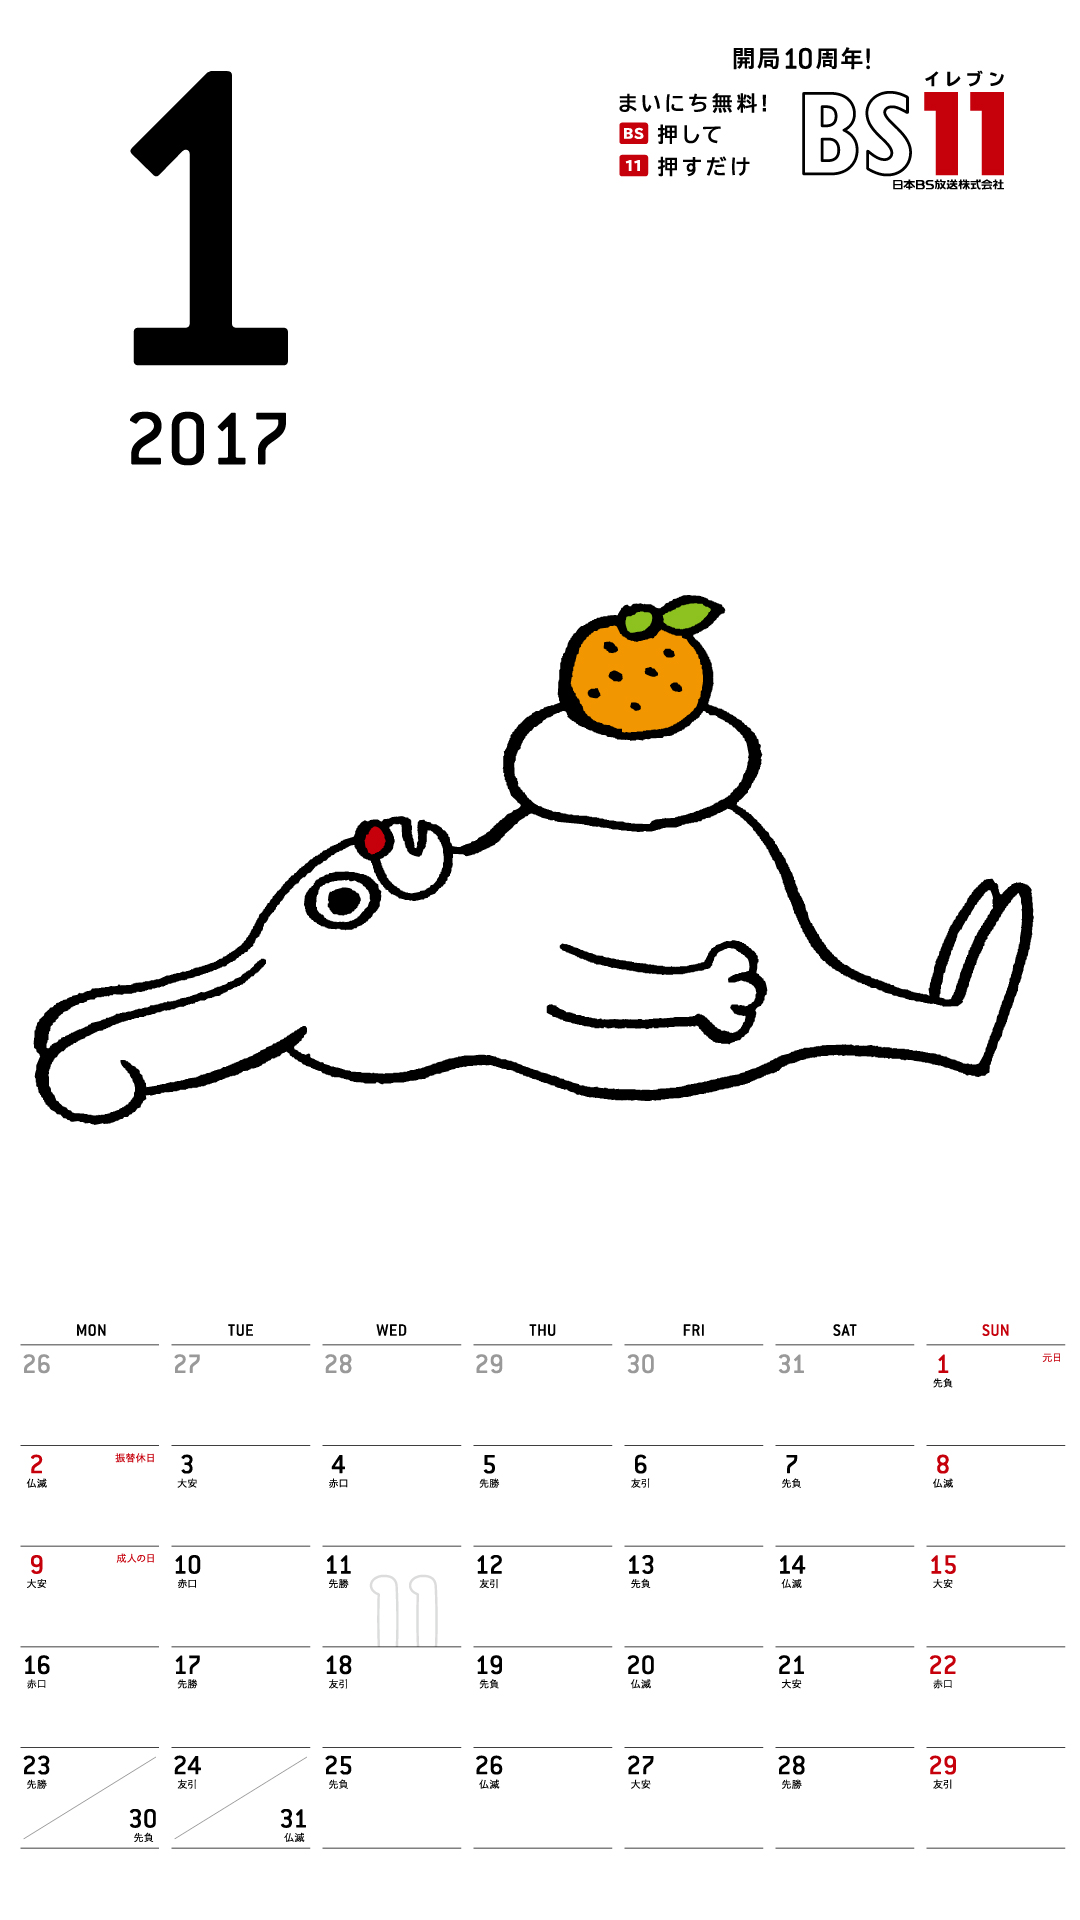 デジタルカレンダー 2017年1月